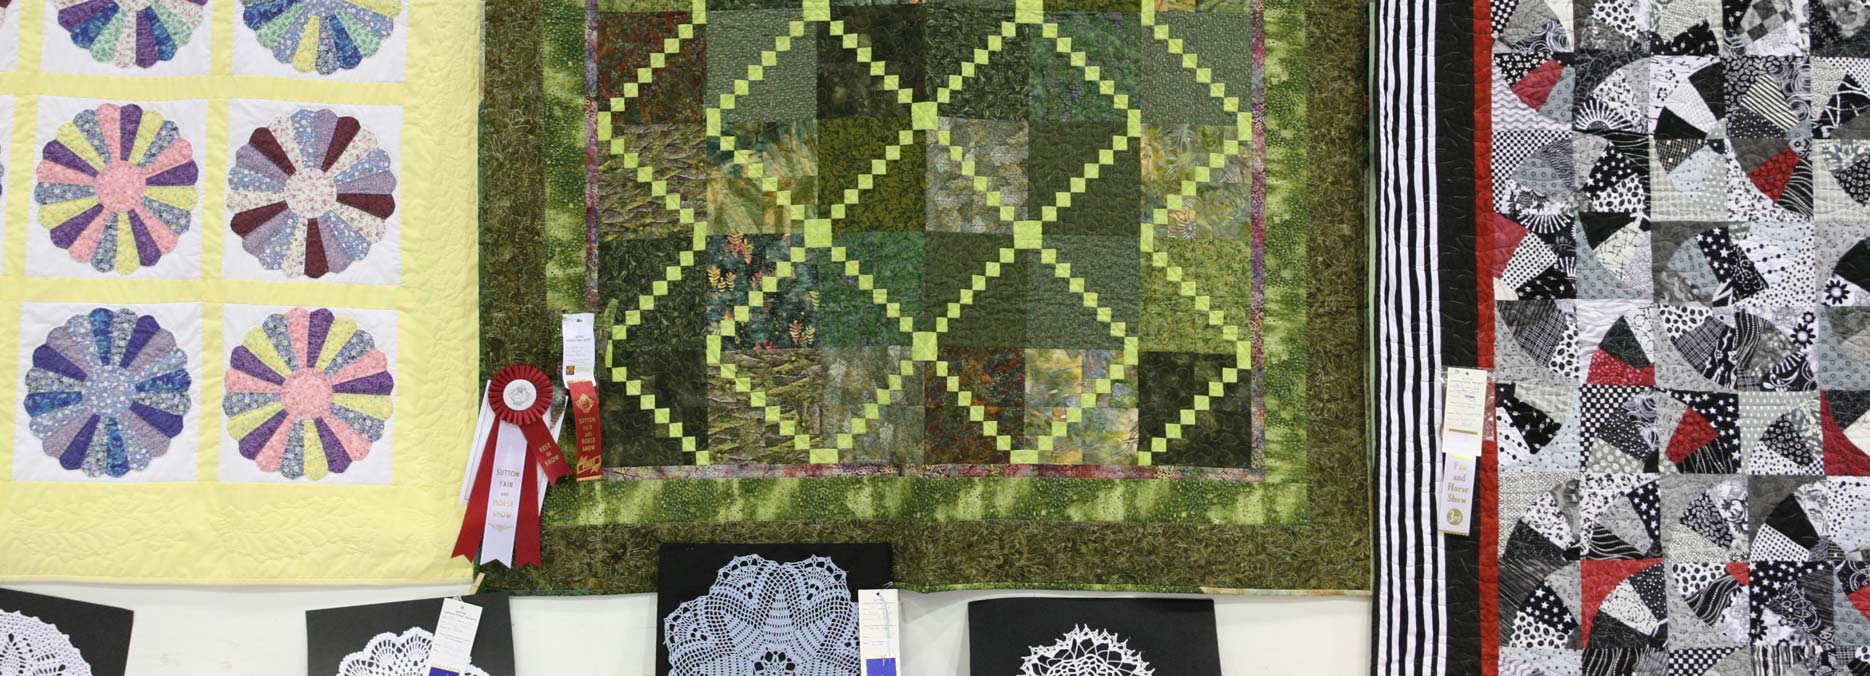 Quilts at Sutton Fair